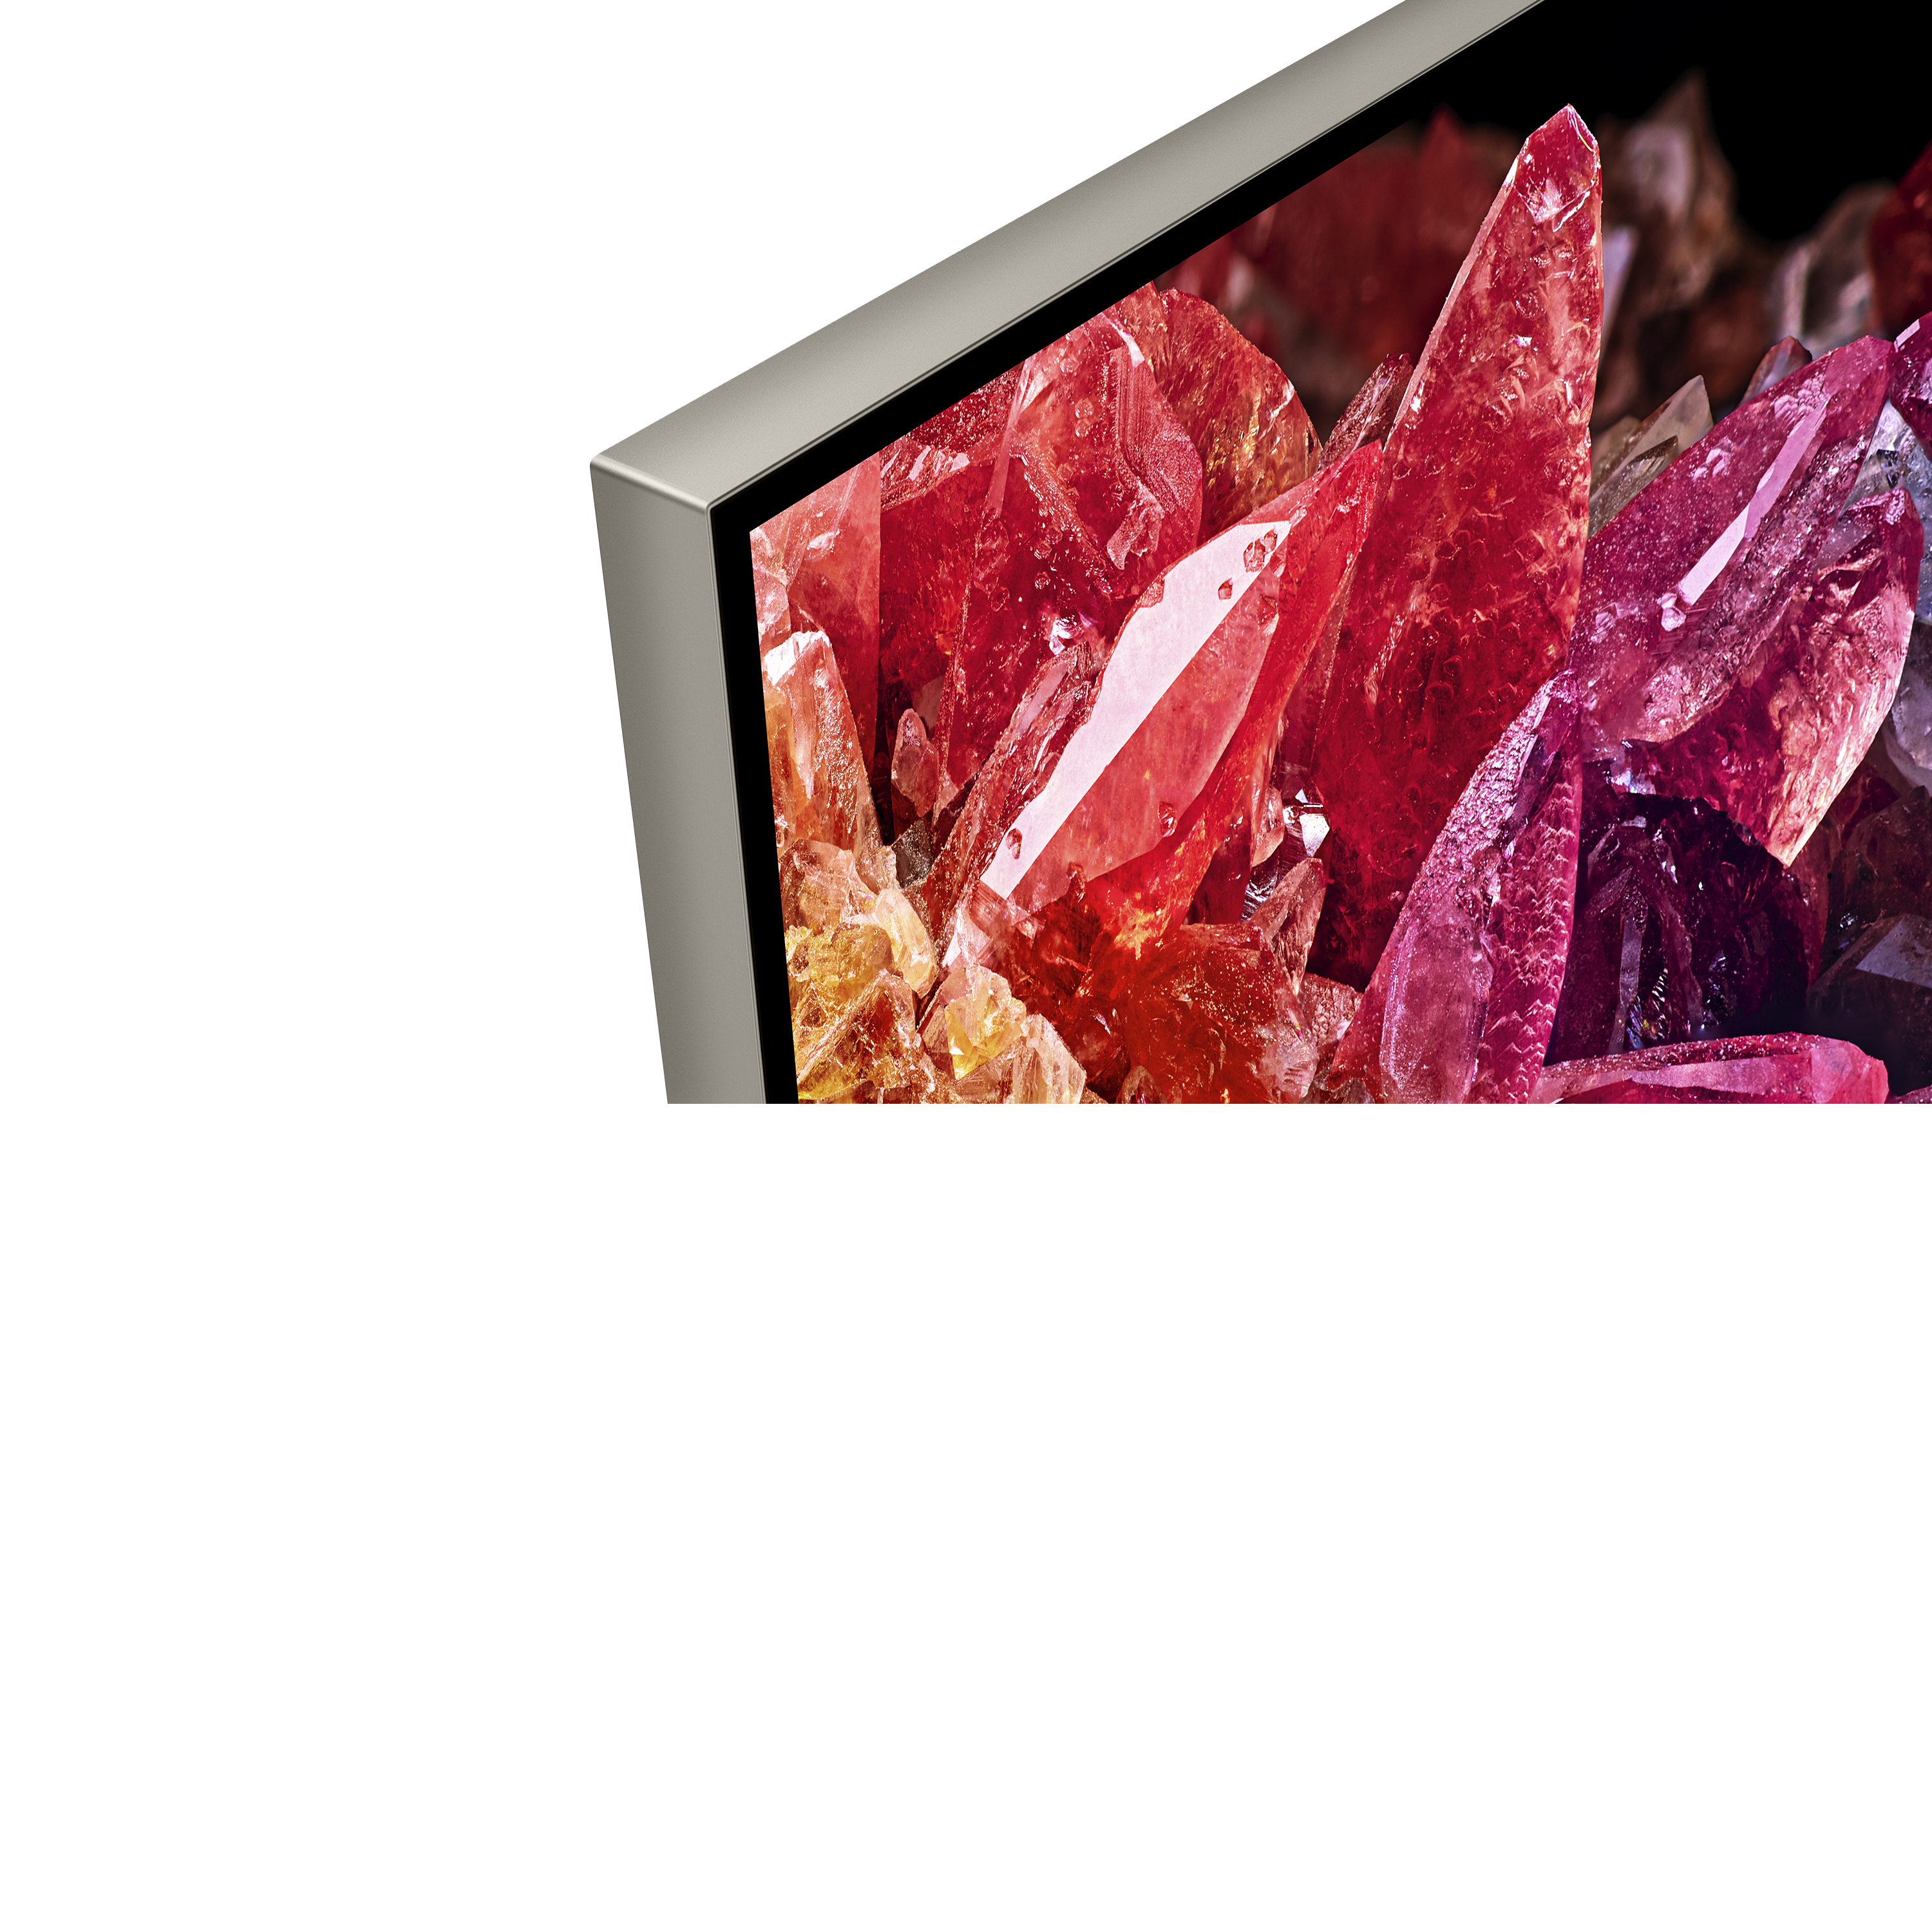 BRAVIA X95K 邊框的近拍照，螢幕上顯示紅色和橘色水晶的影像